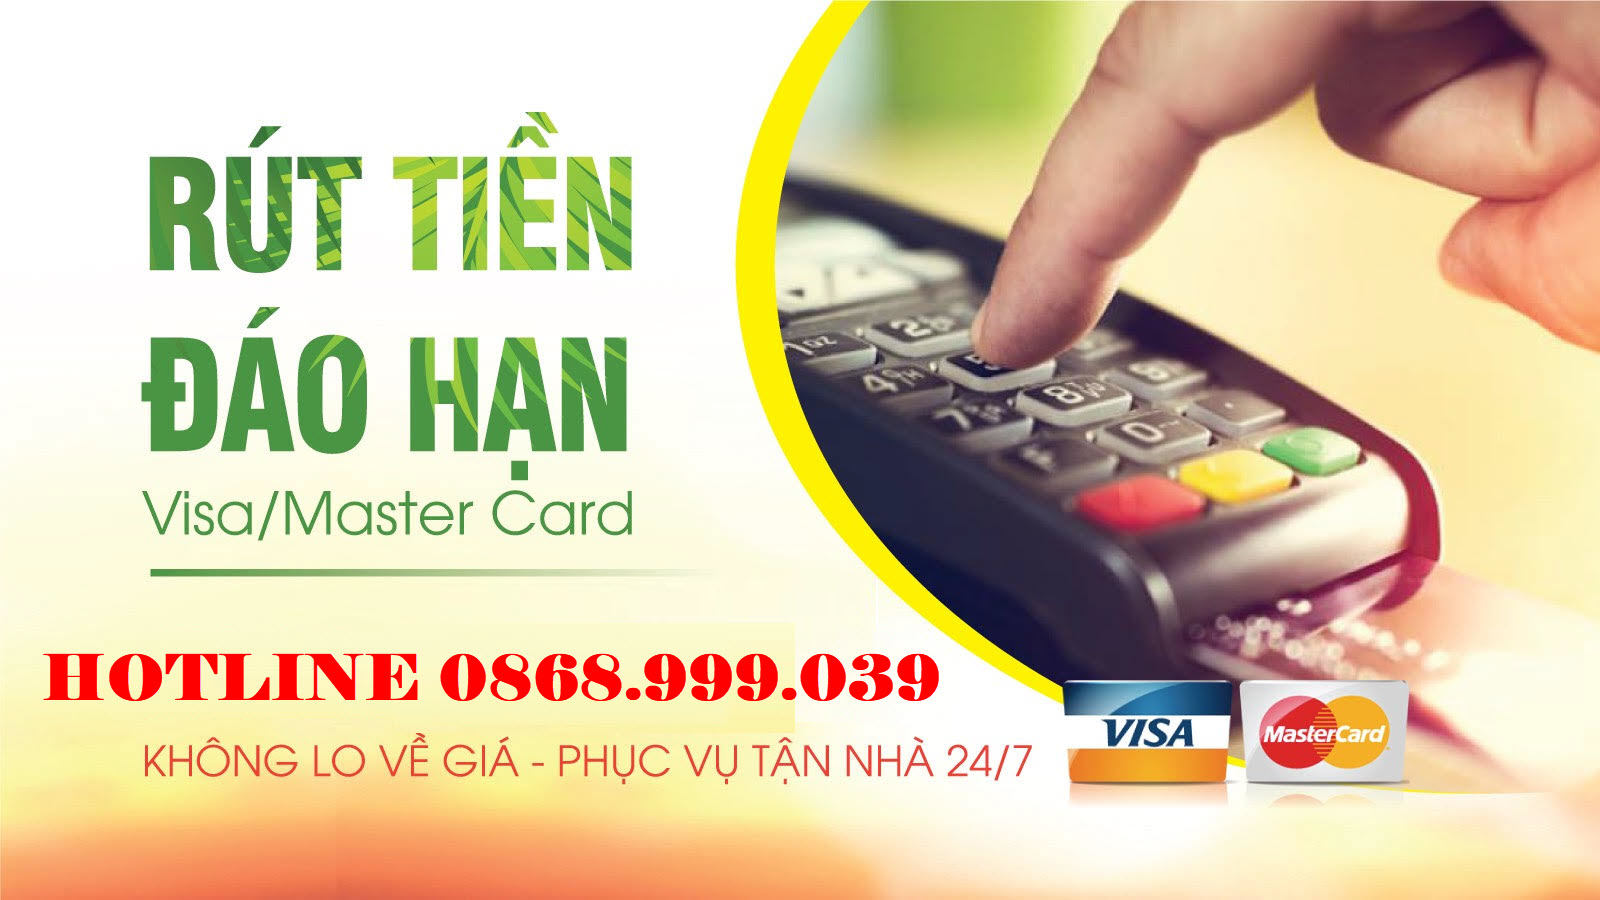 Rút tiền thẻ tín dụng tại Thanh Trì